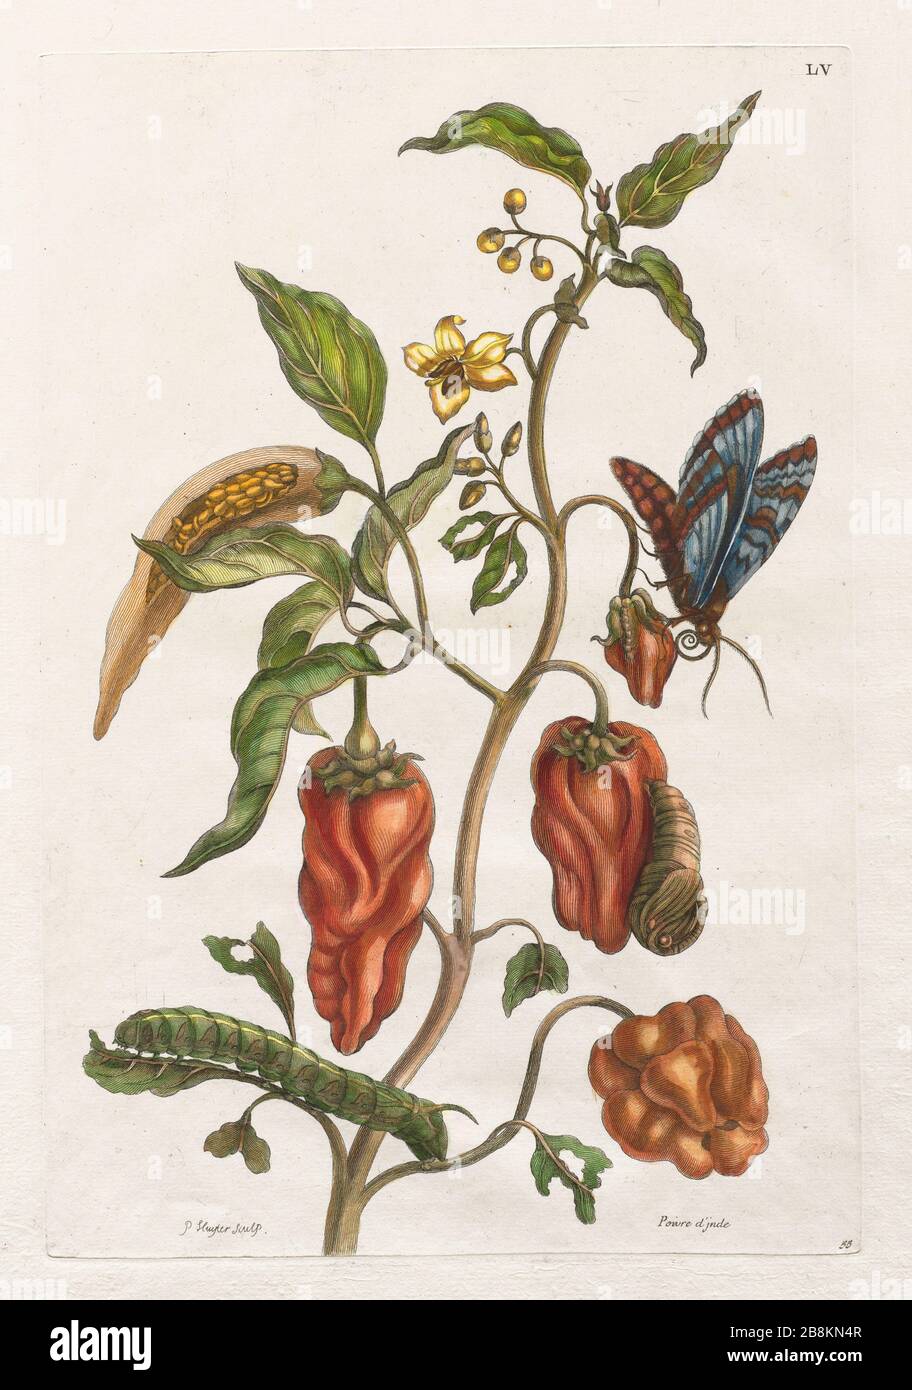 Planta de pimienta y mariposa de Metamorfosis insectorum Suriname amensium (insectos de Surinam) un libro coloreado a mano del siglo 18 por Maria Sibylla Merian publicado en Amsterdam en 1719 Foto de stock